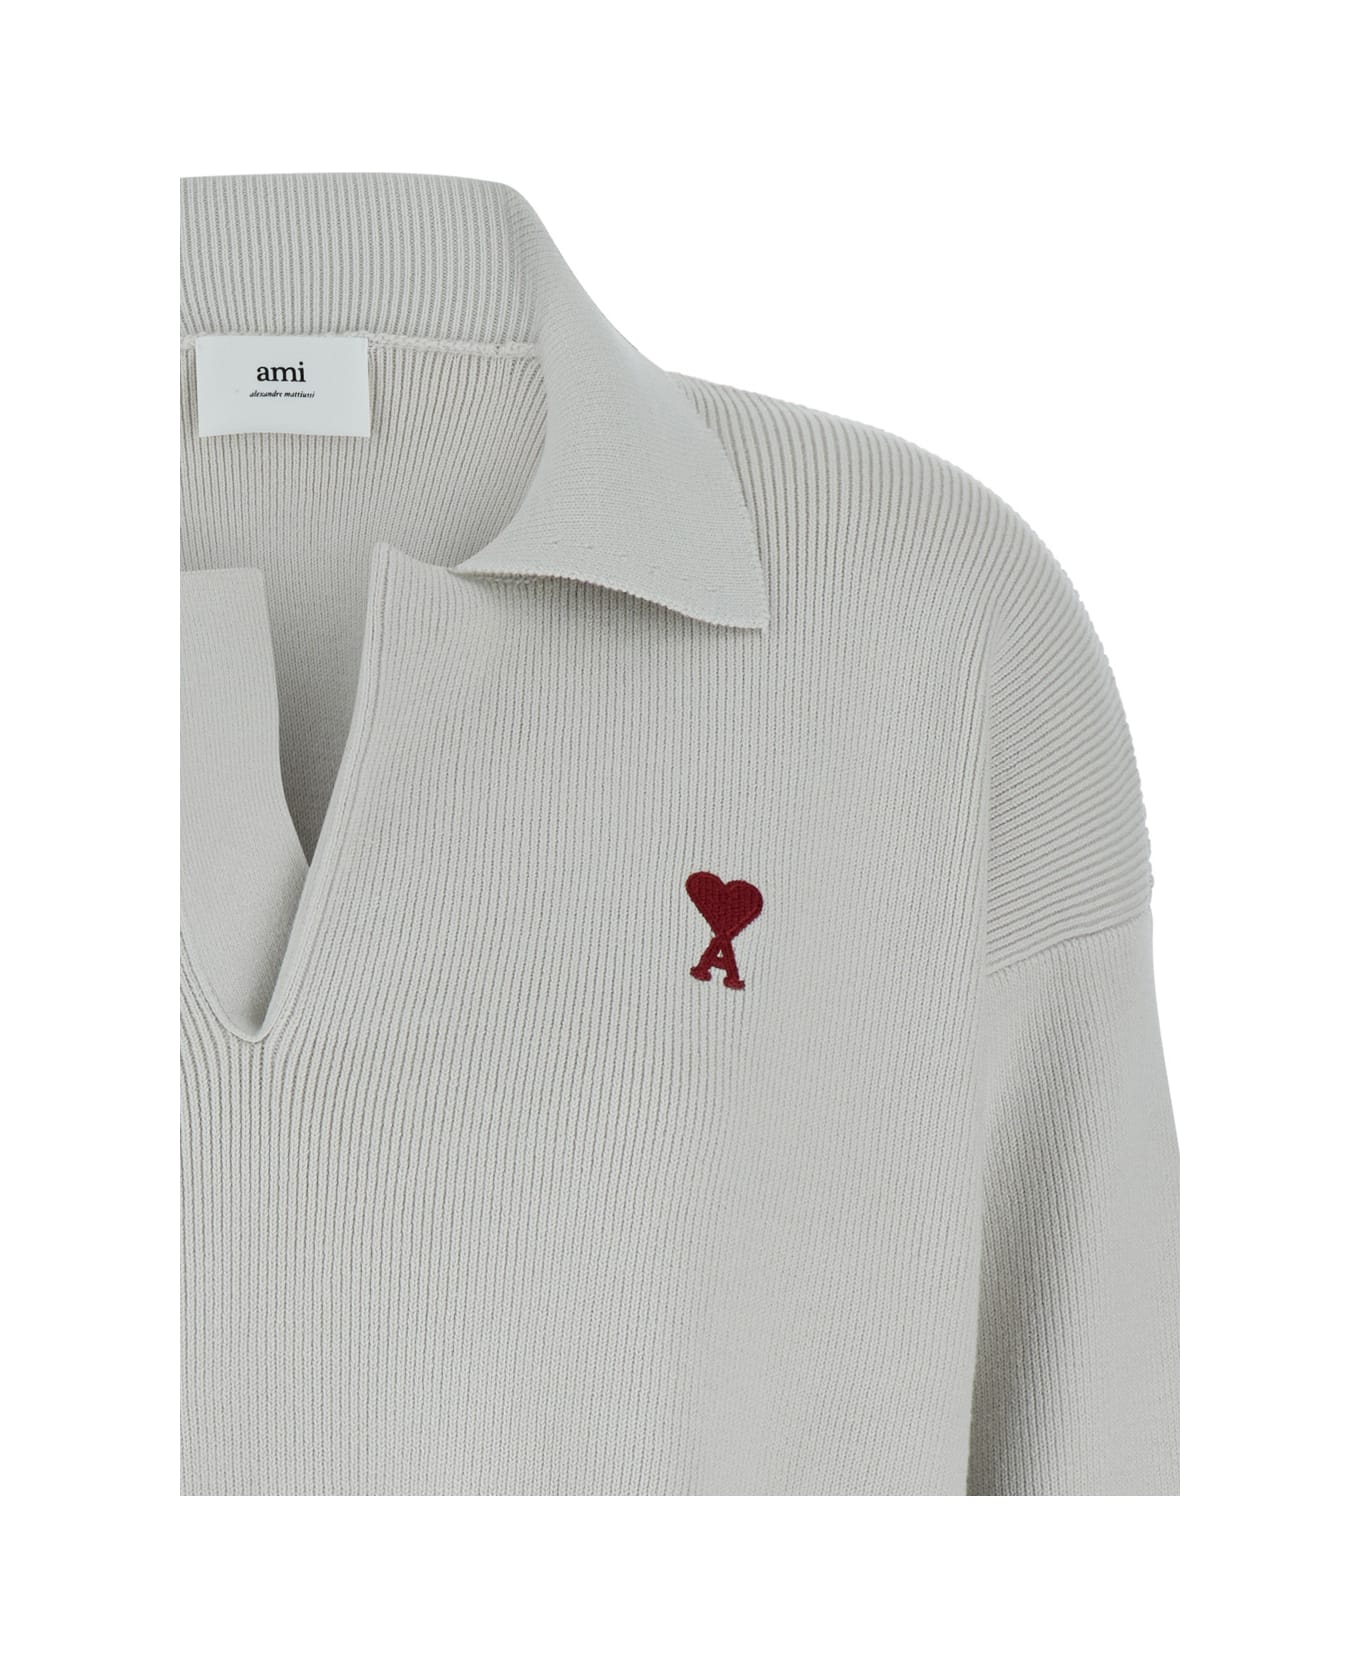 Ami Alexandre Mattiussi White Polo Sweater With Embroidered Ami De Coeur Logo In Cotton Woman - White